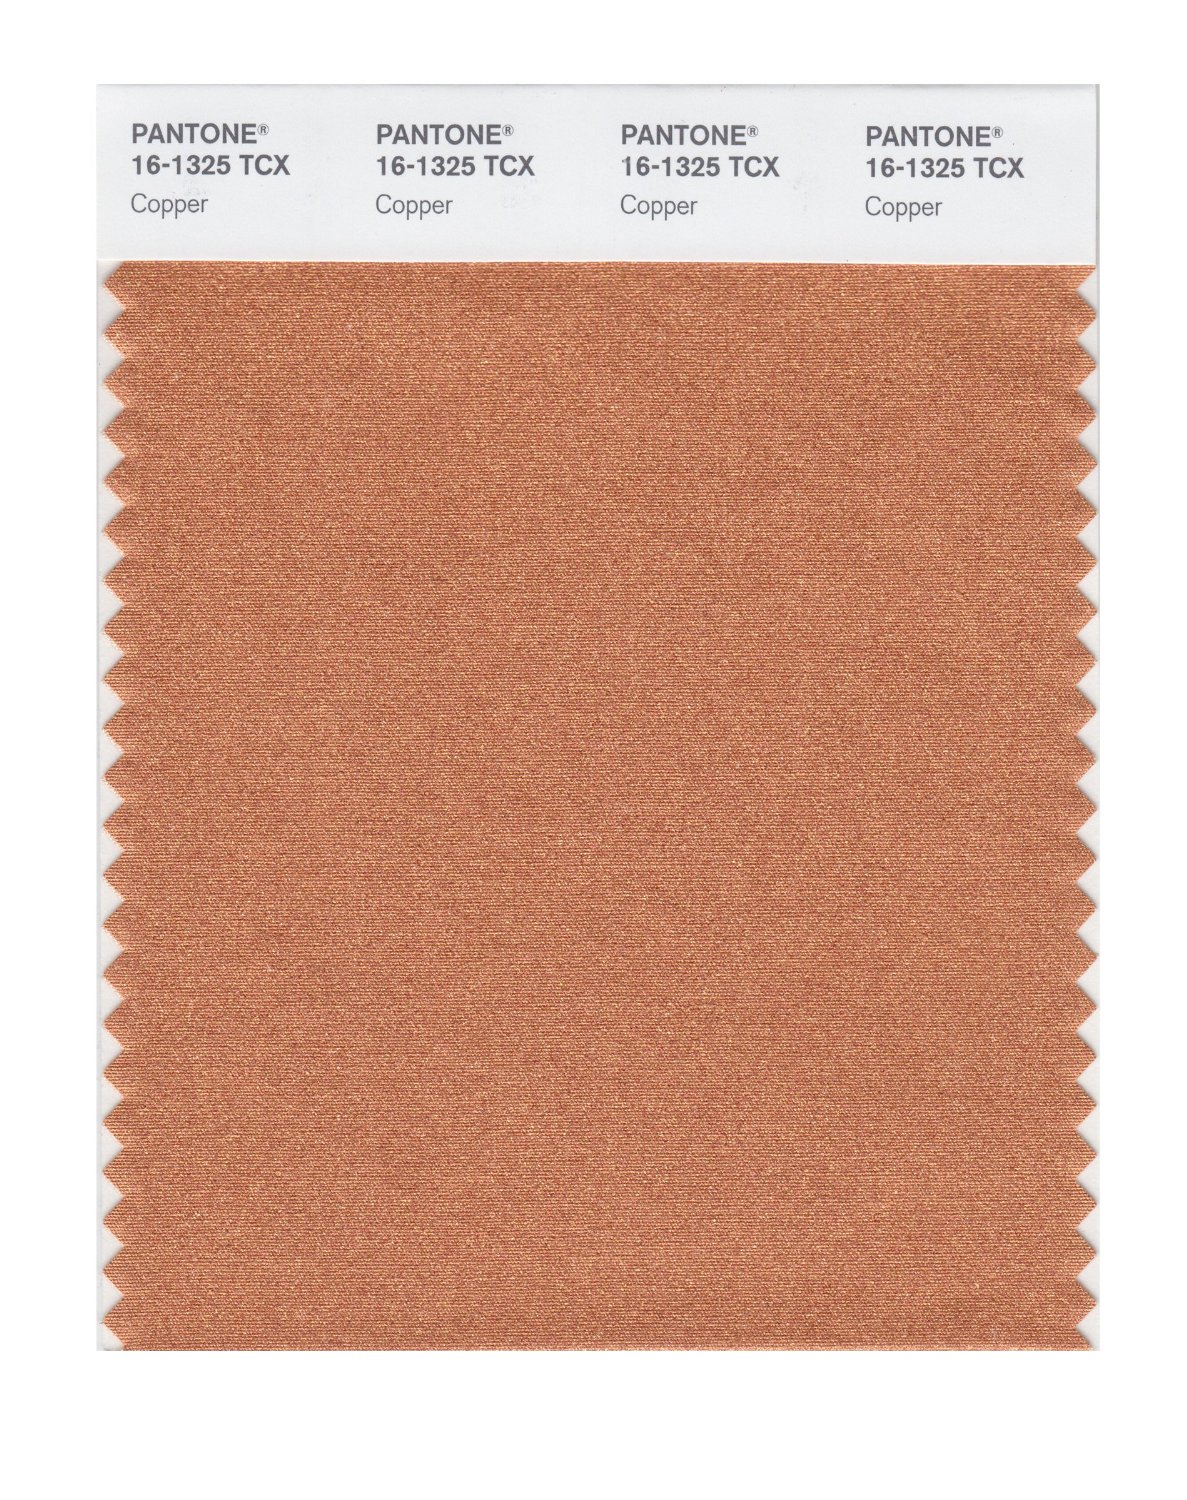 Pantone Cotton Swatch 16-1325 Copper